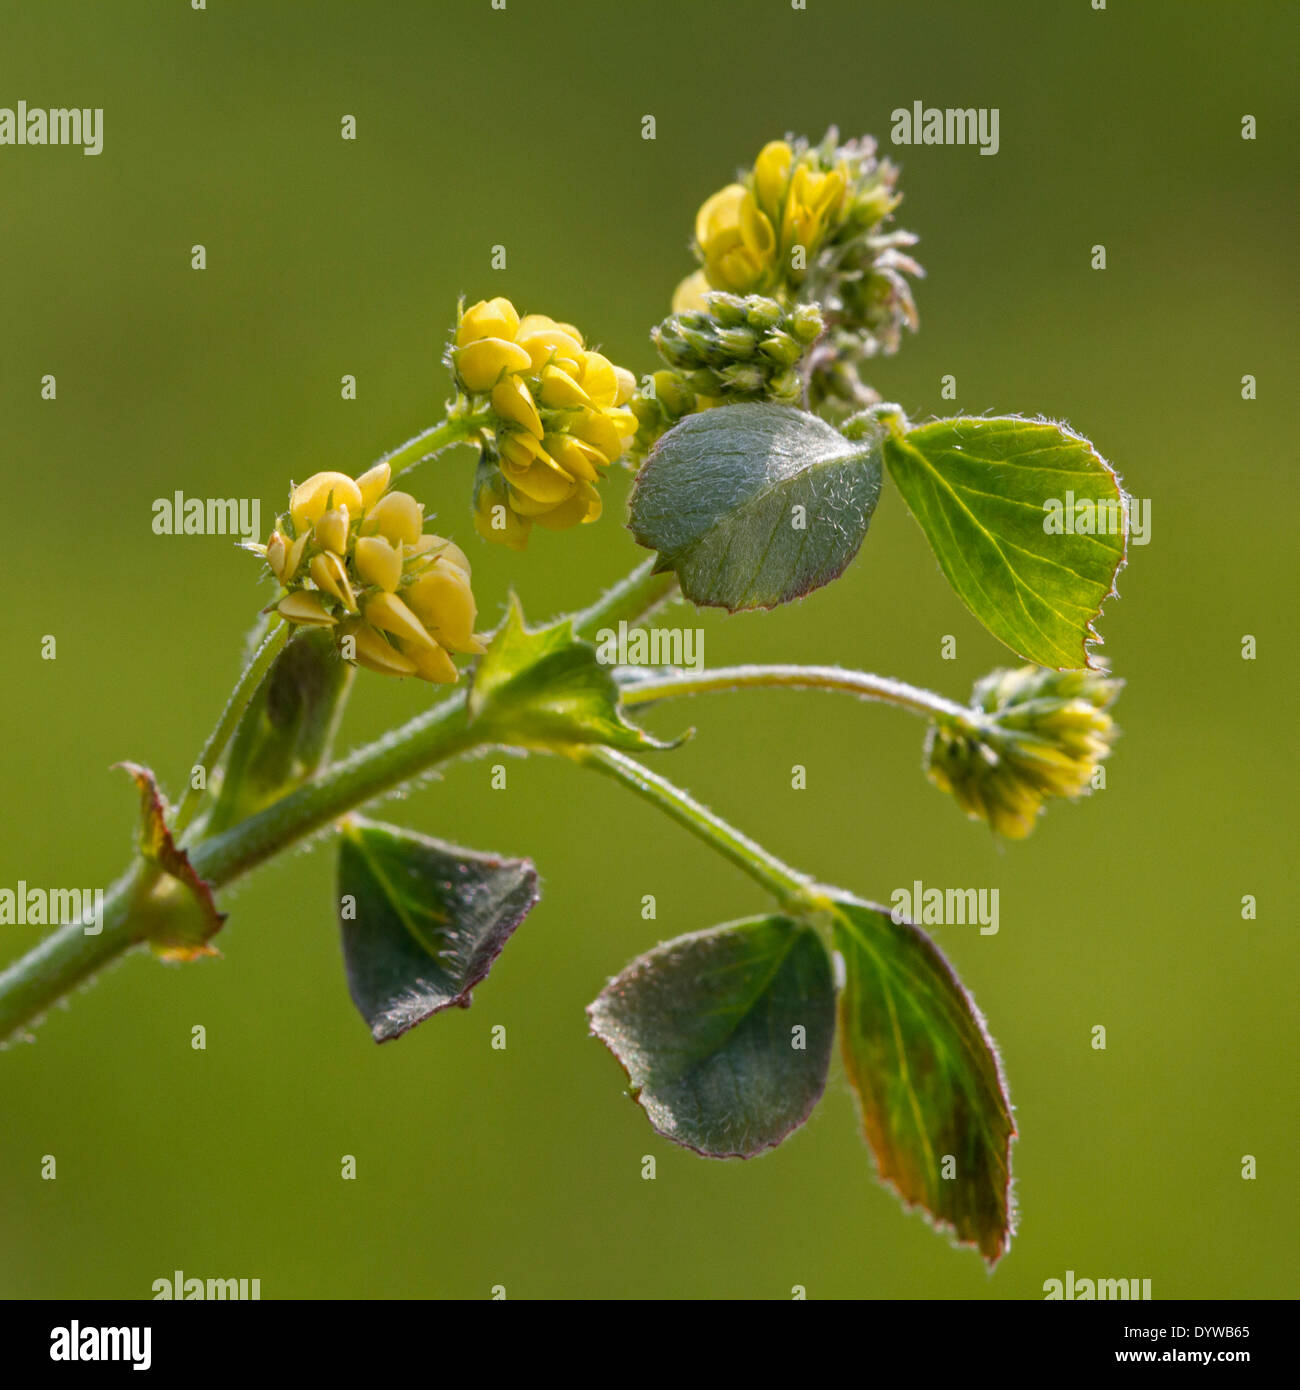 Clover (Trifolium sp.) in flower Stock Photo